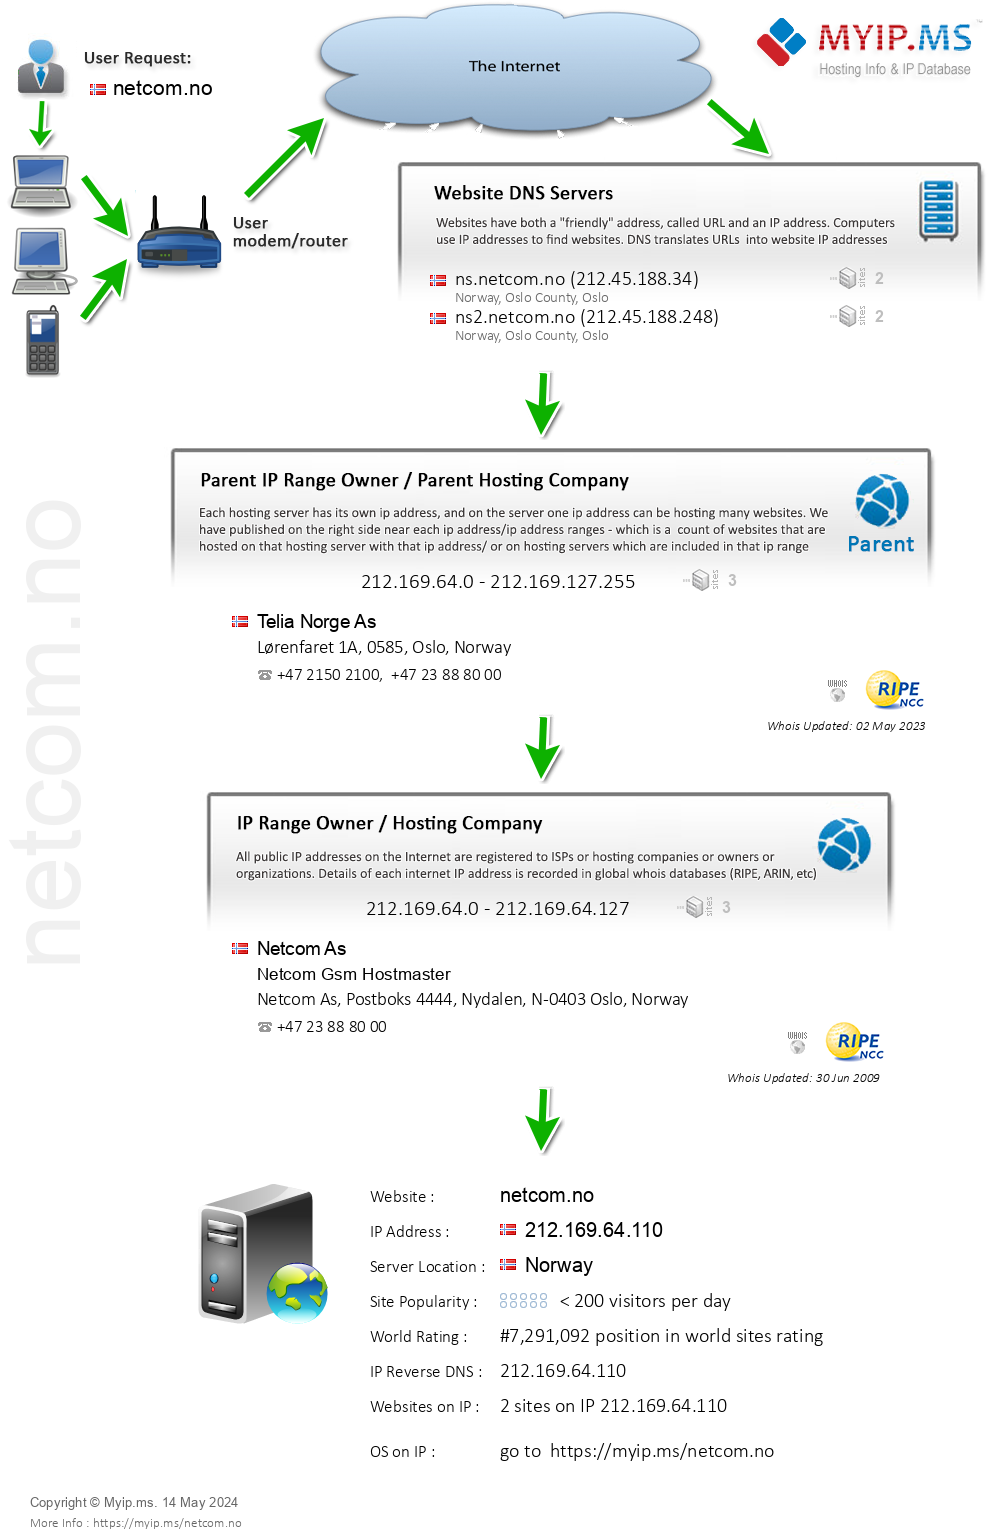 Netcom.no - Website Hosting Visual IP Diagram